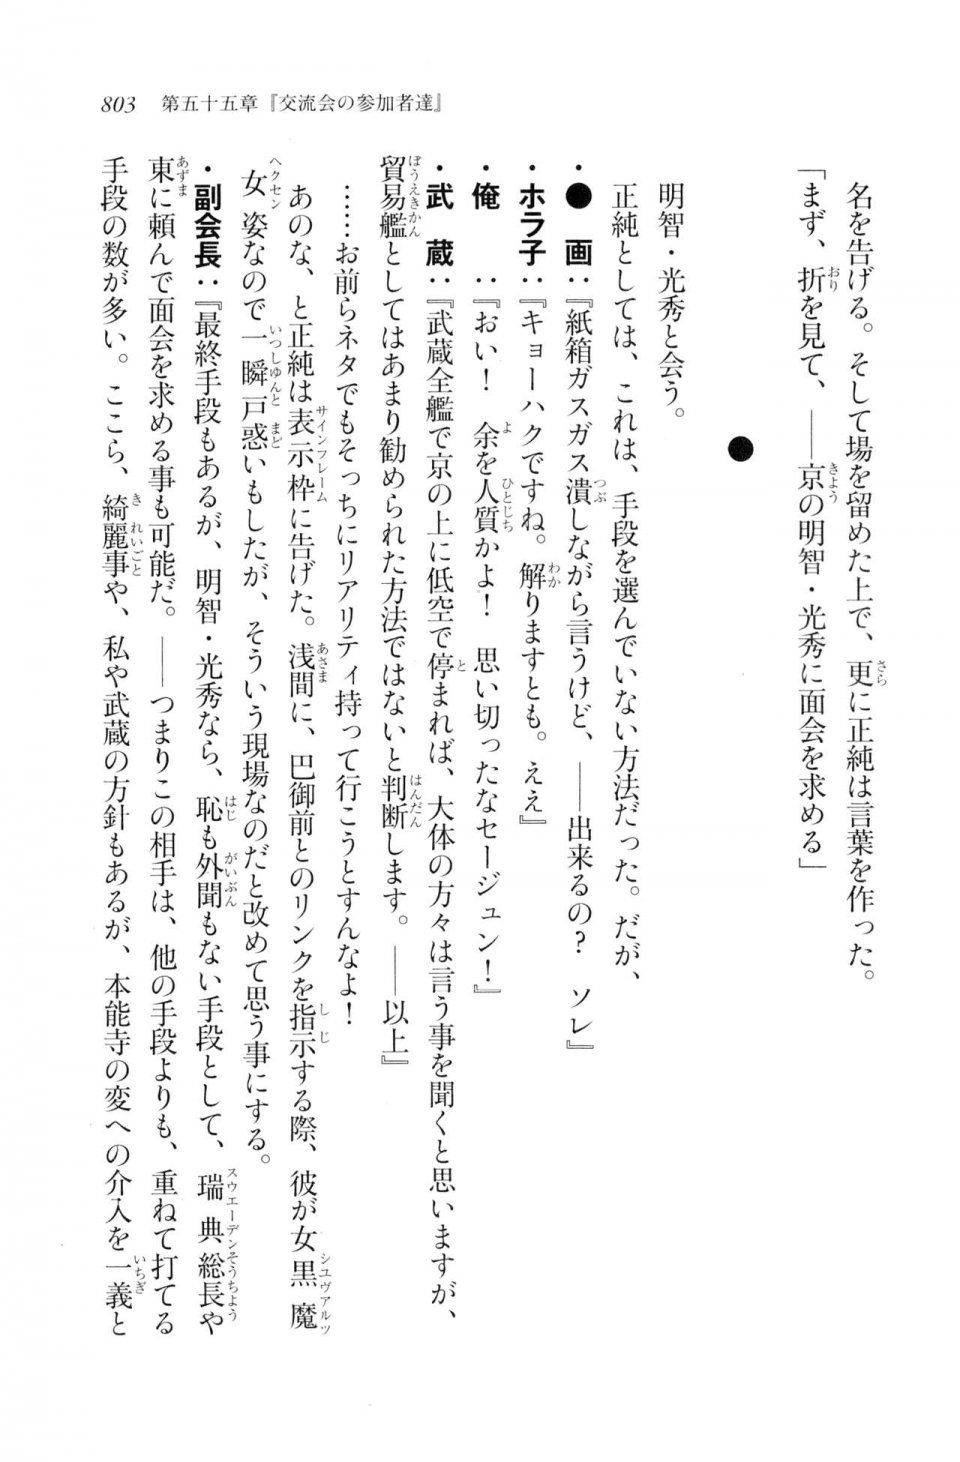 Kyoukai Senjou no Horizon LN Vol 20(8B) - Photo #803